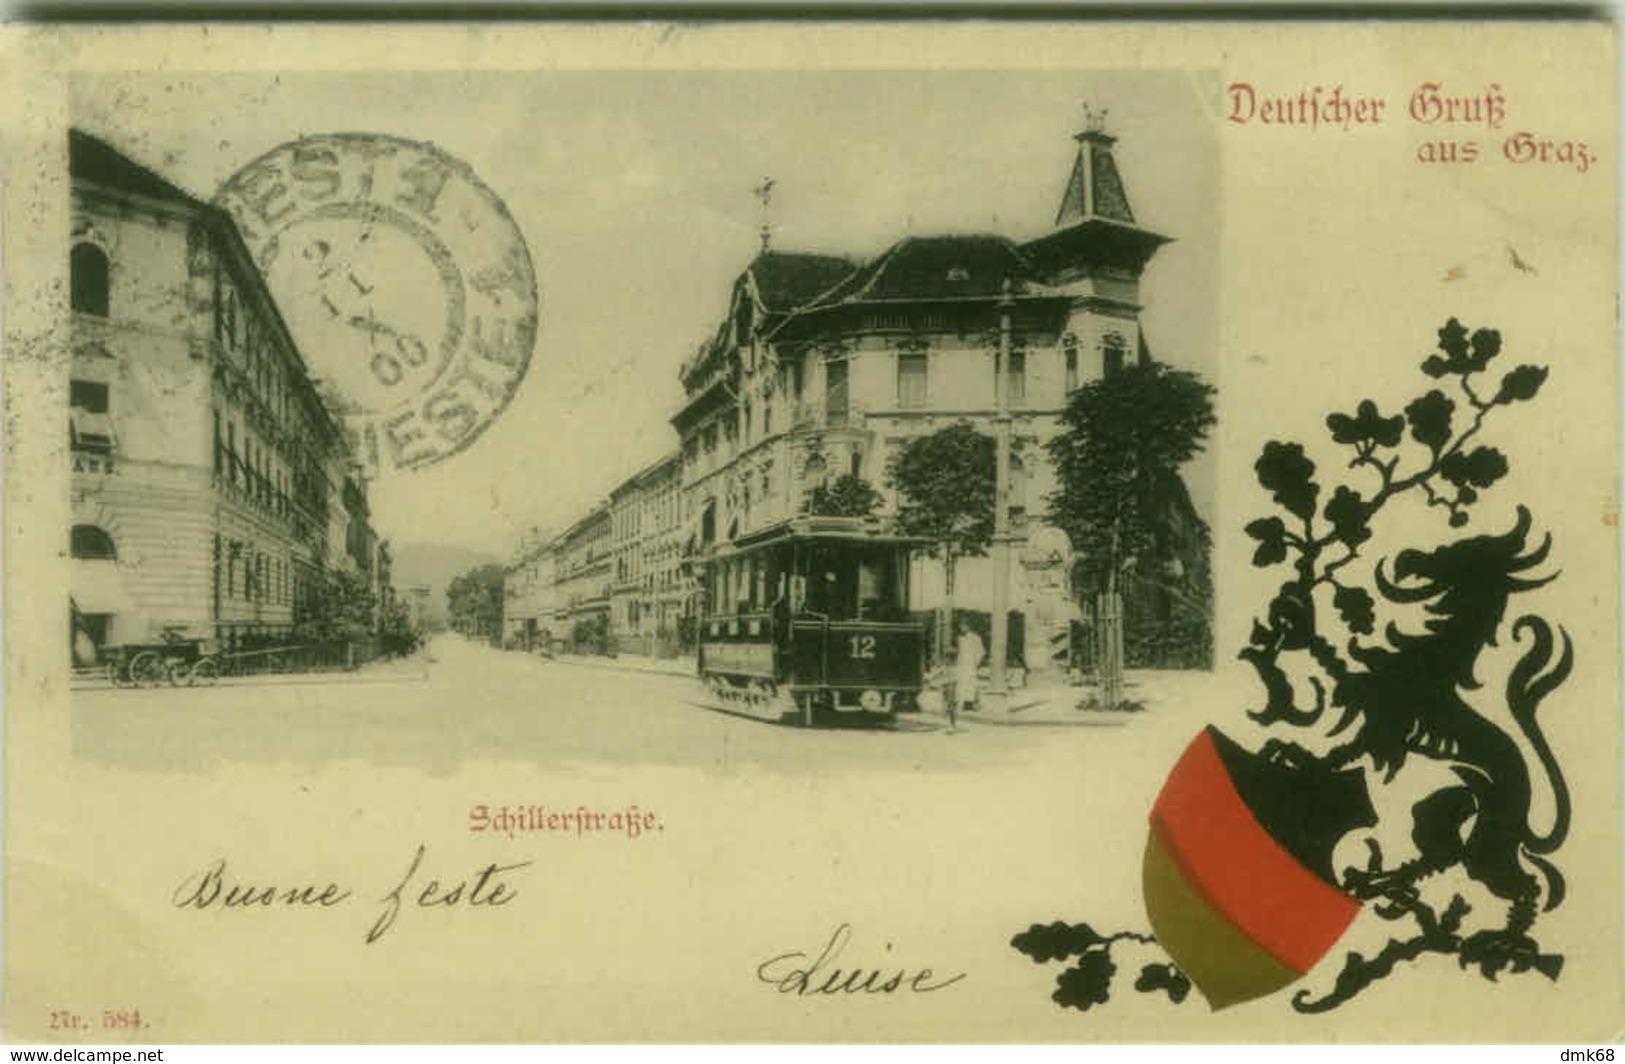 AK AUSTRIA - DEUTFCHER GRUS AUS GRAZ - SCHILLERFRAFKE - 1900s (BG3712) - Graz